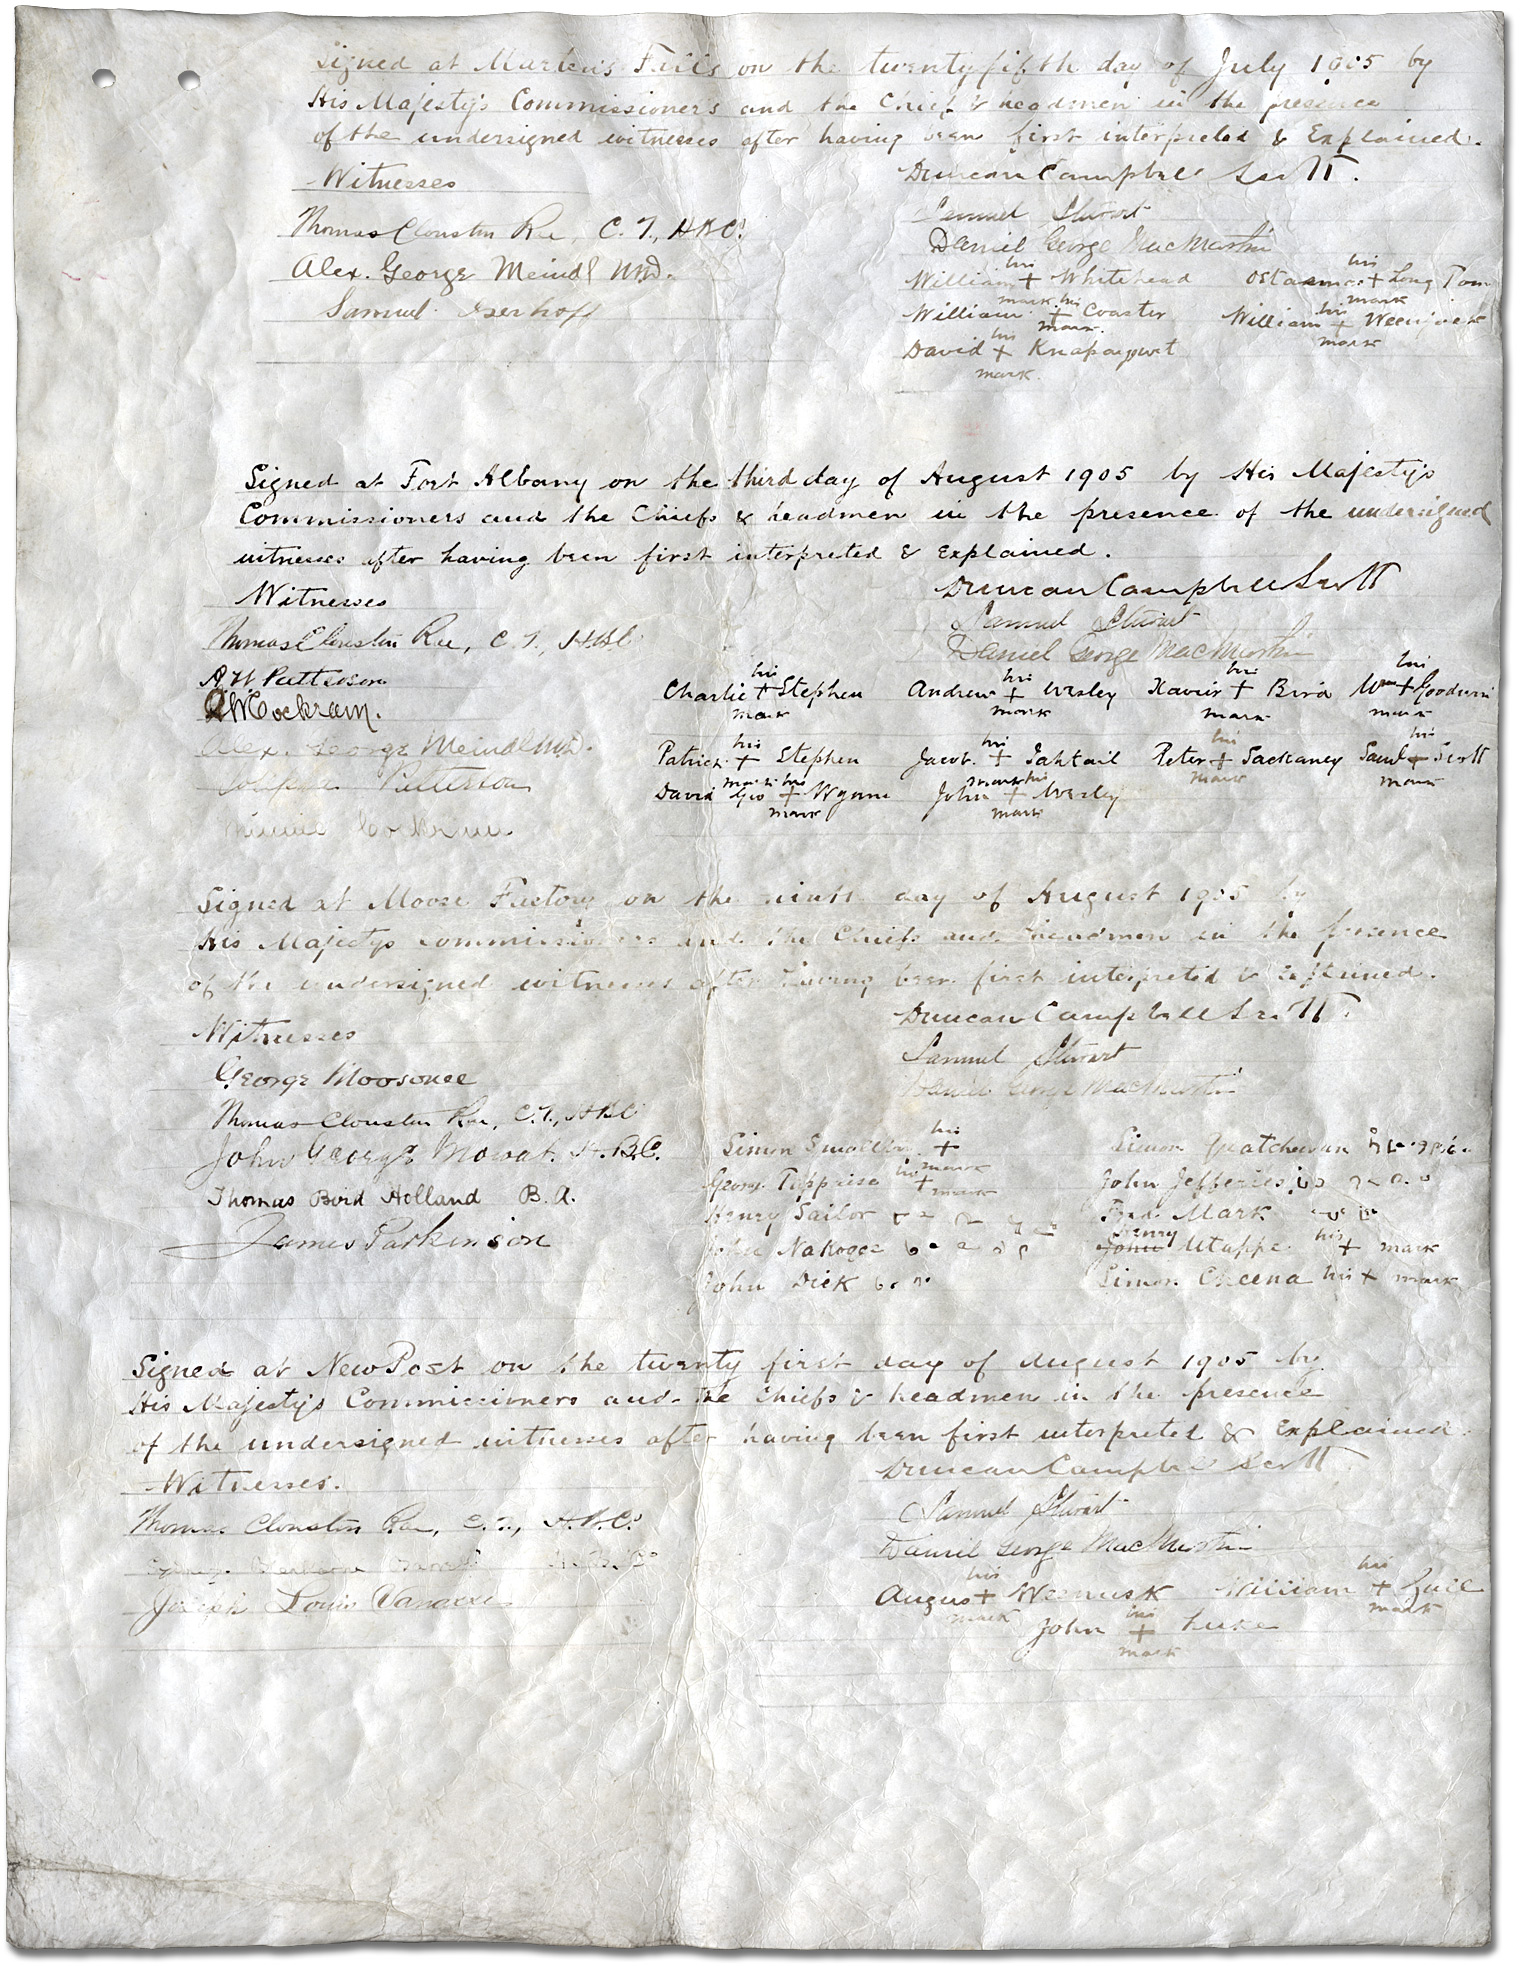 Le traité de la Baie James (traité no 9) [page 4]